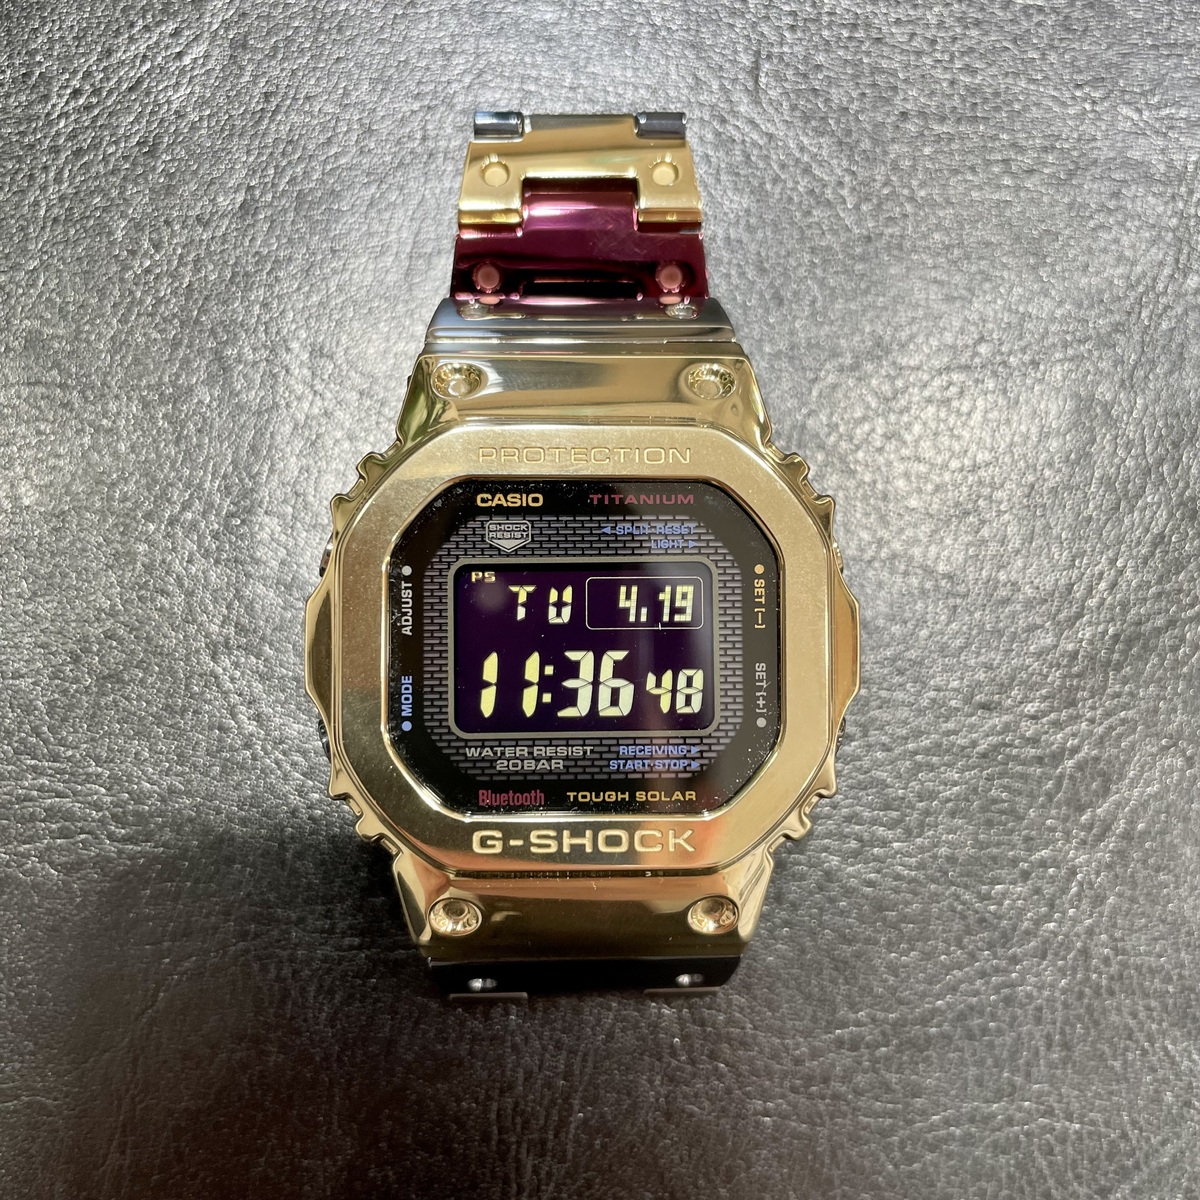 ジーショックのチタン GMW-B5000TR-9JR タフソーラー 腕時計の買取実績です。